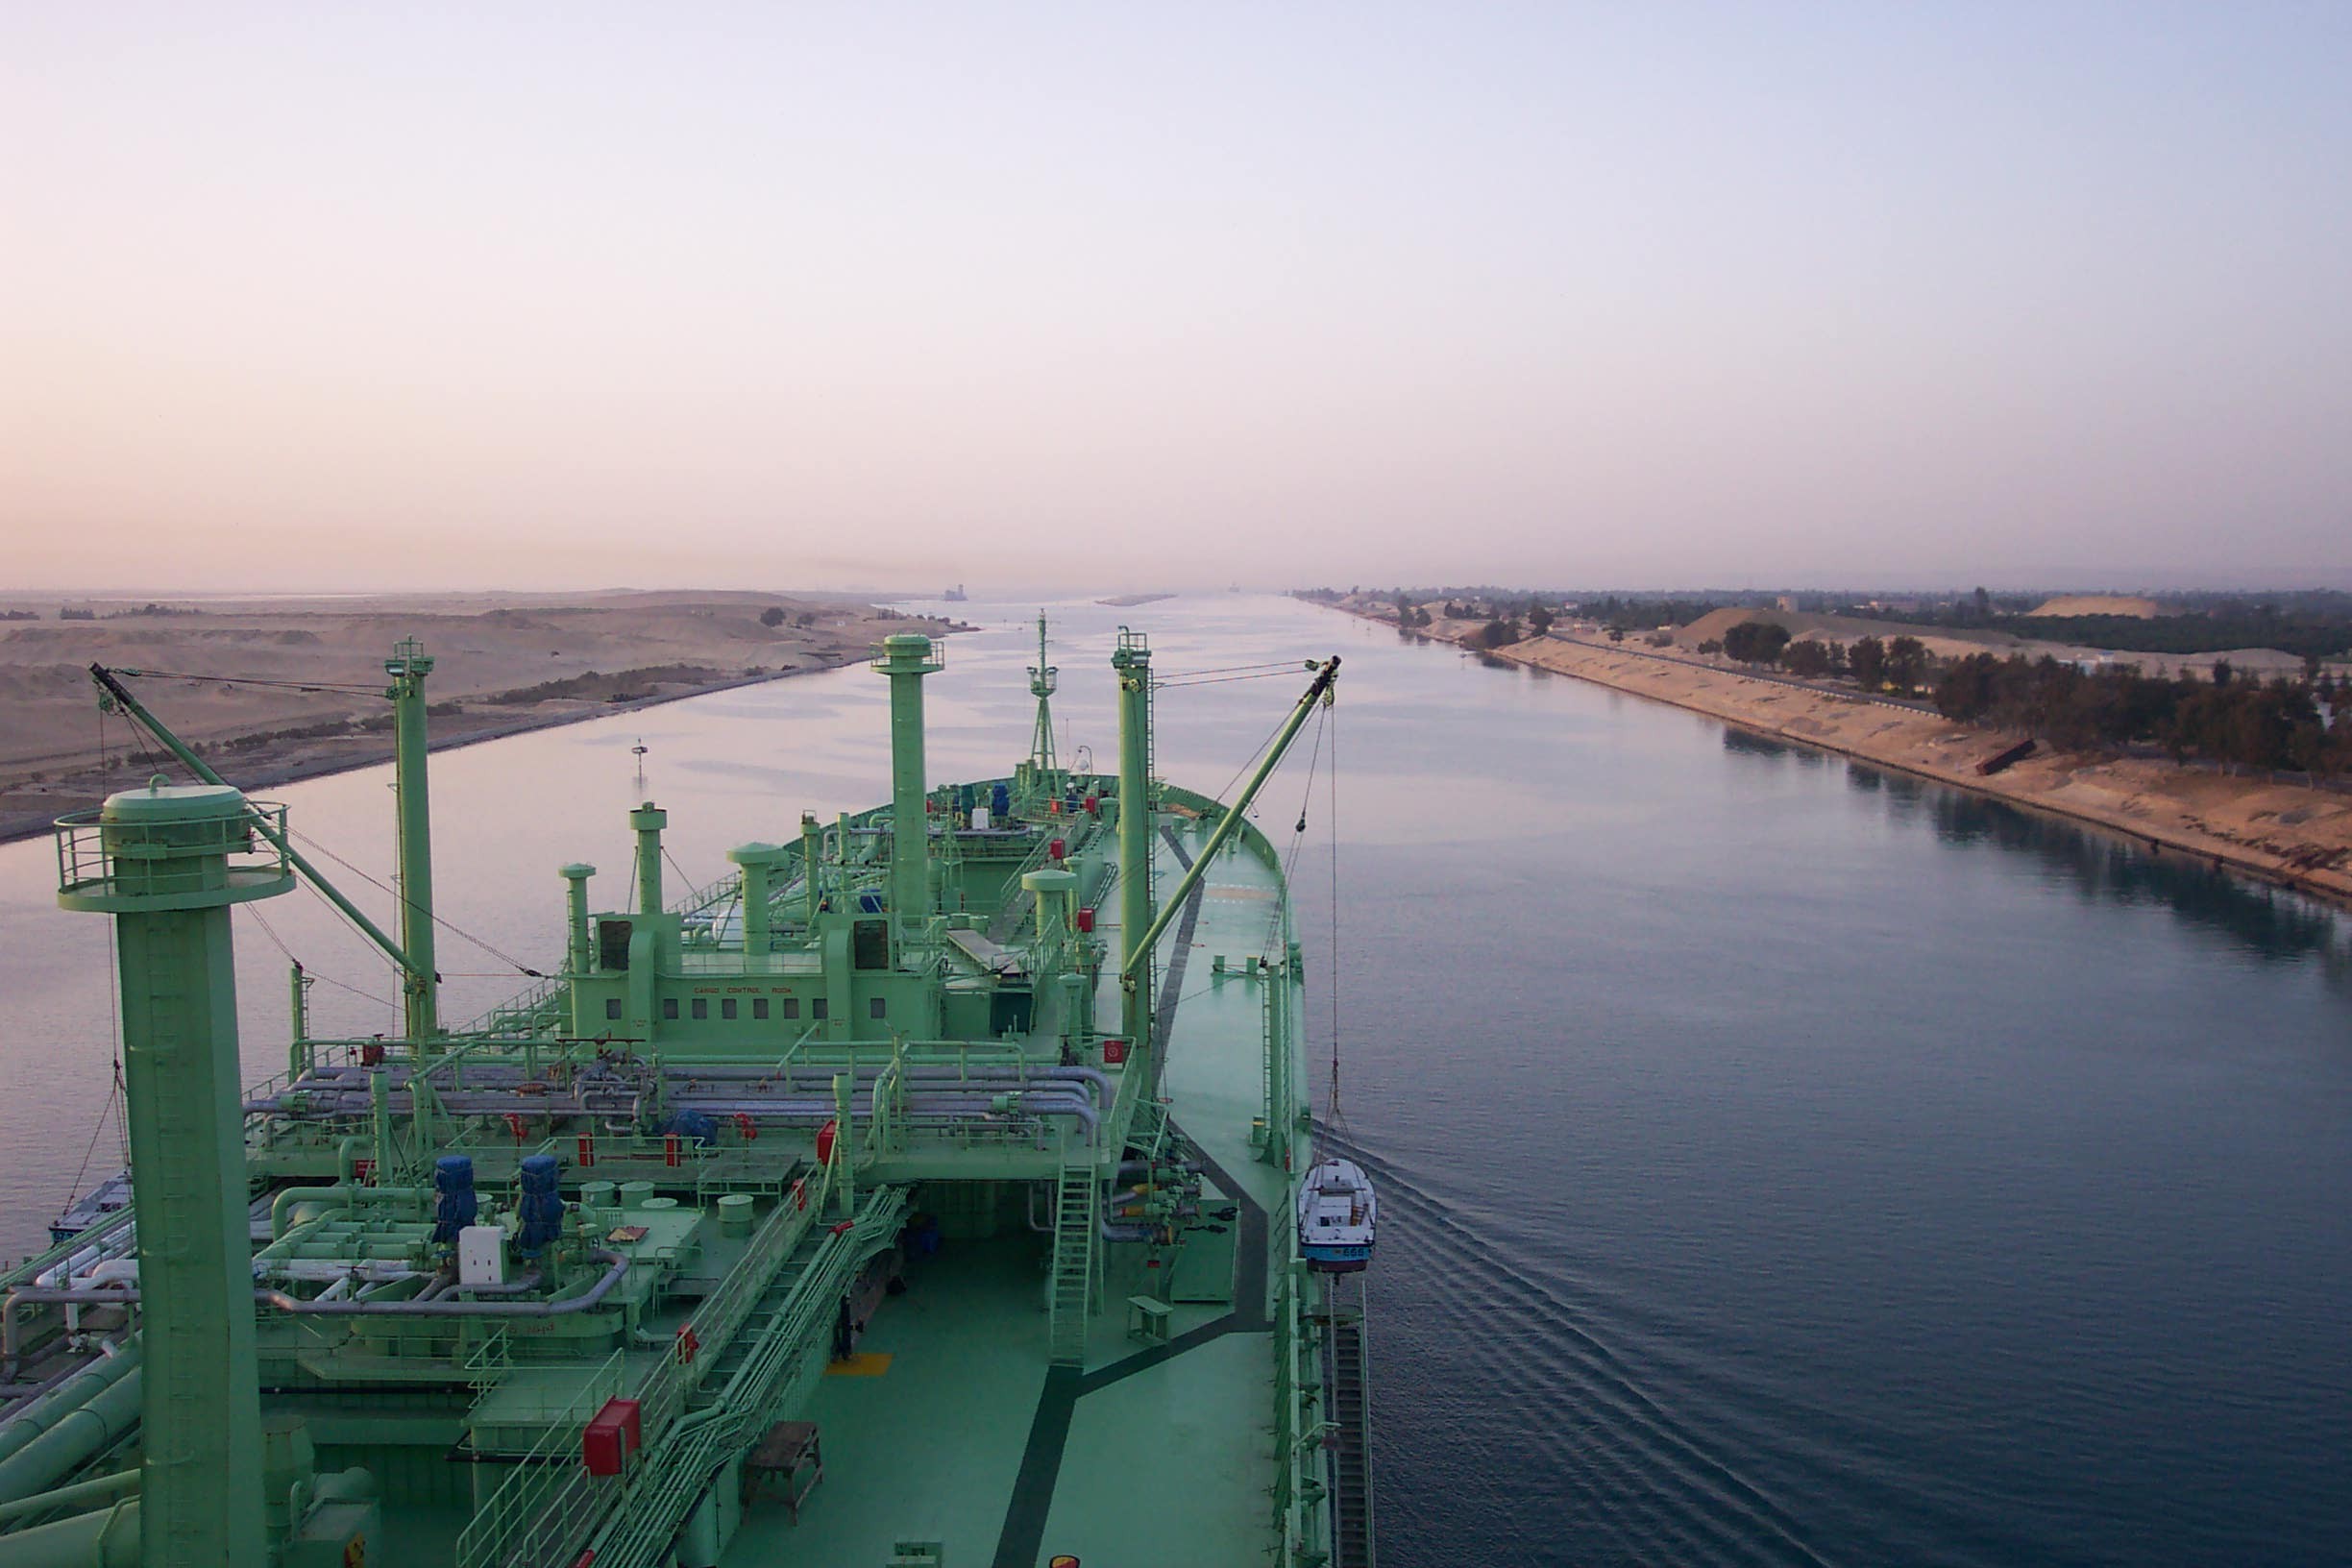 Suez Canal Rebate